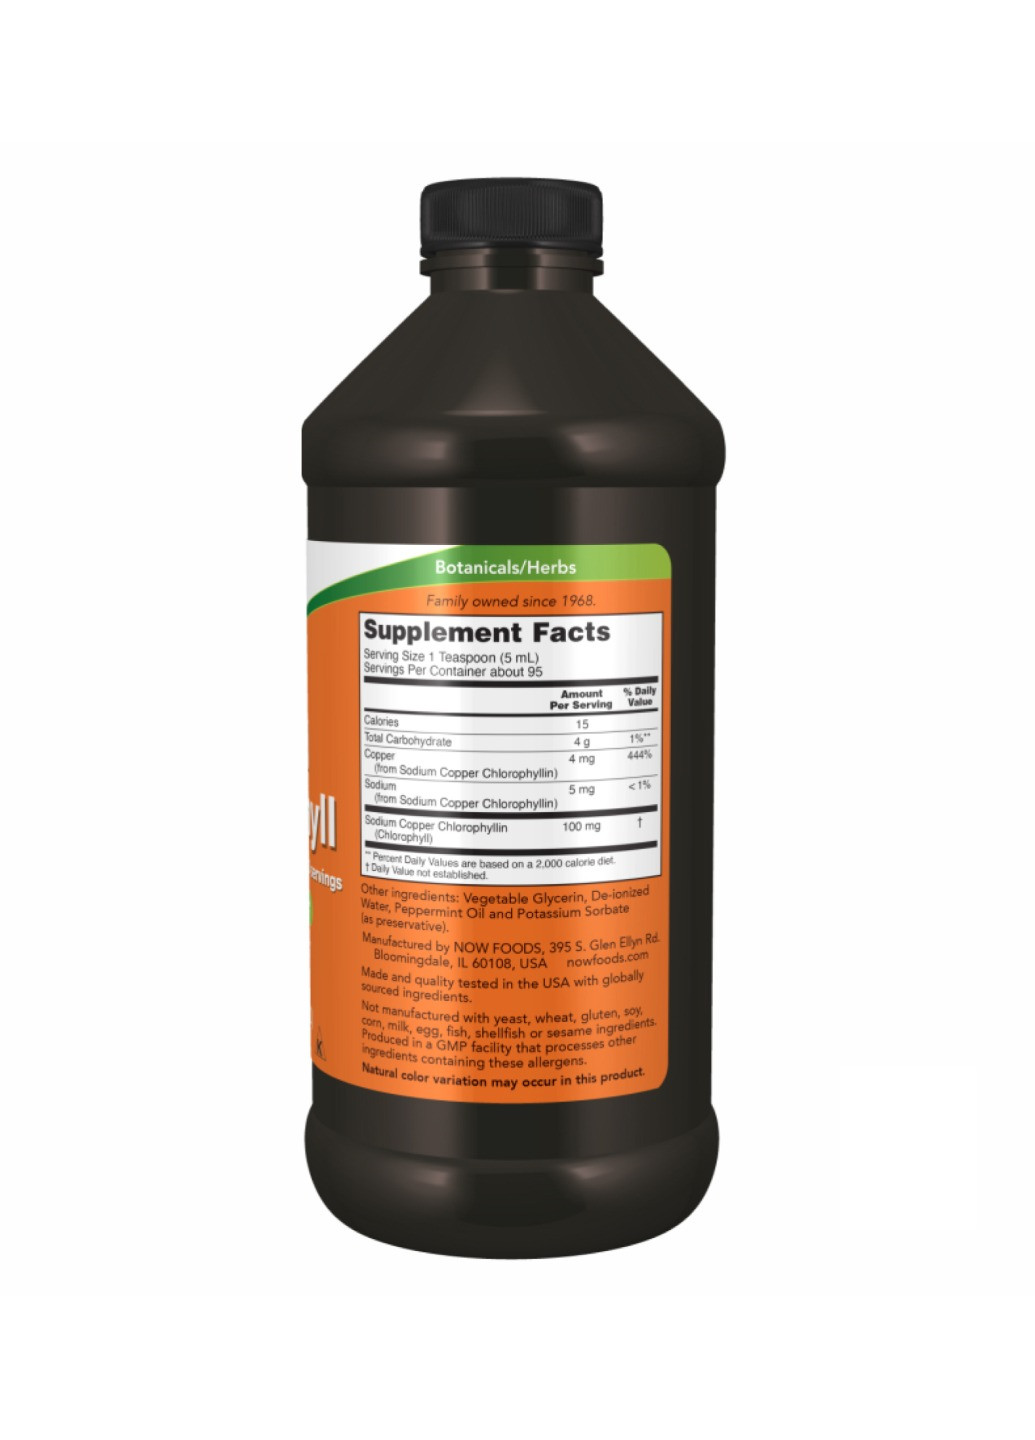 Питьевой хлорофилл Chlorophyll Liquid Mint - 16 oz Now Foods (269117615)